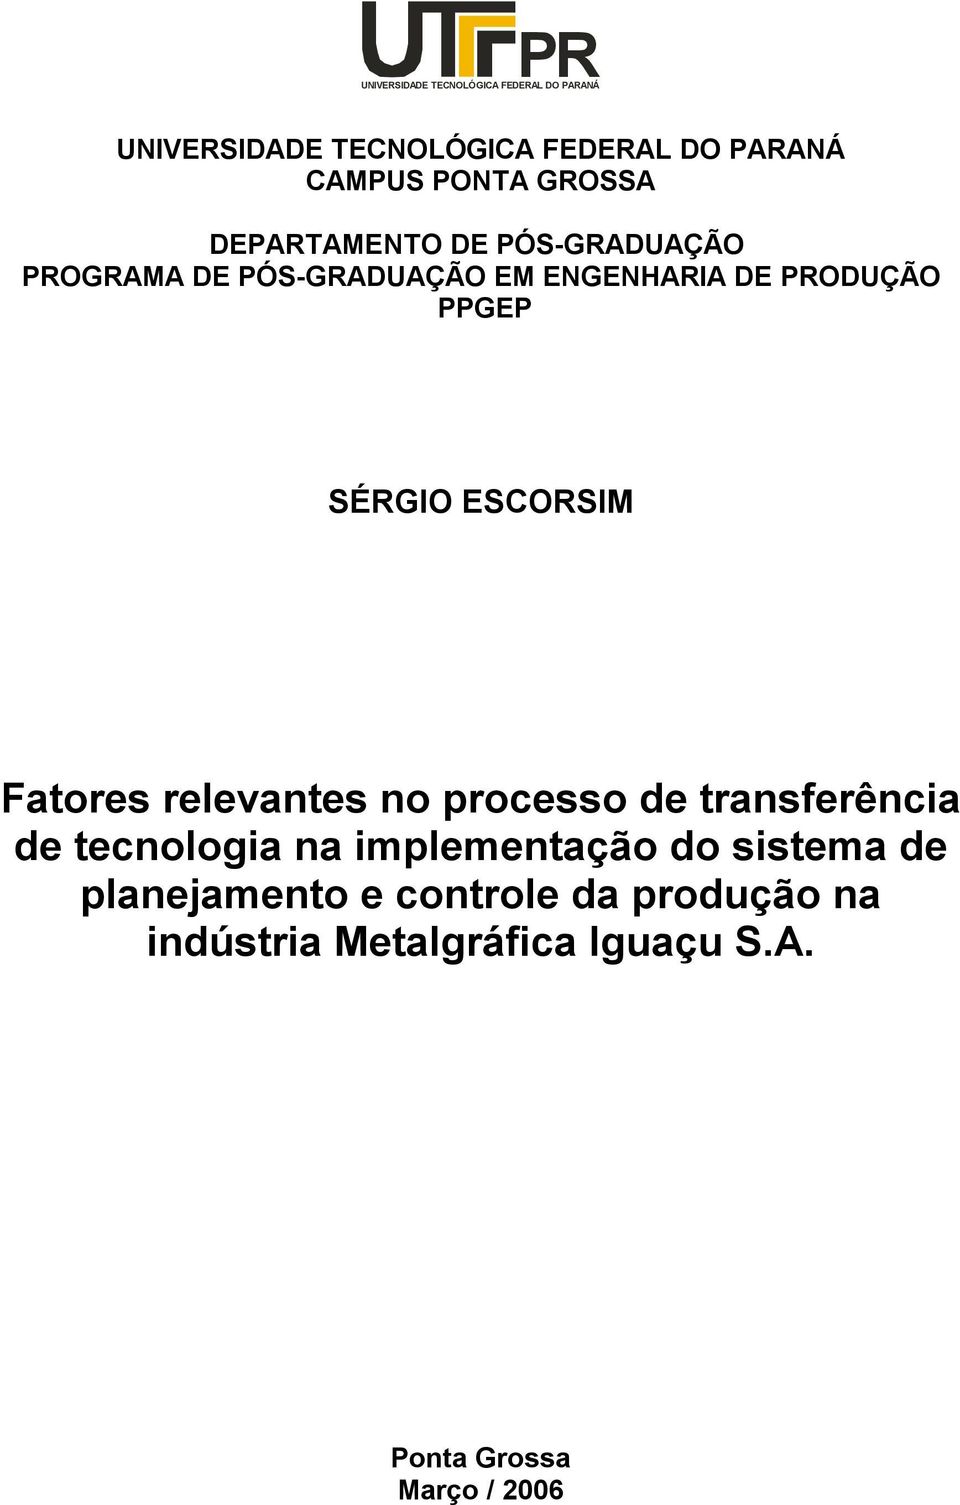 SÉRGIO ESCORSIM Fatores relevantes no processo de transferência de tecnologia na implementação do